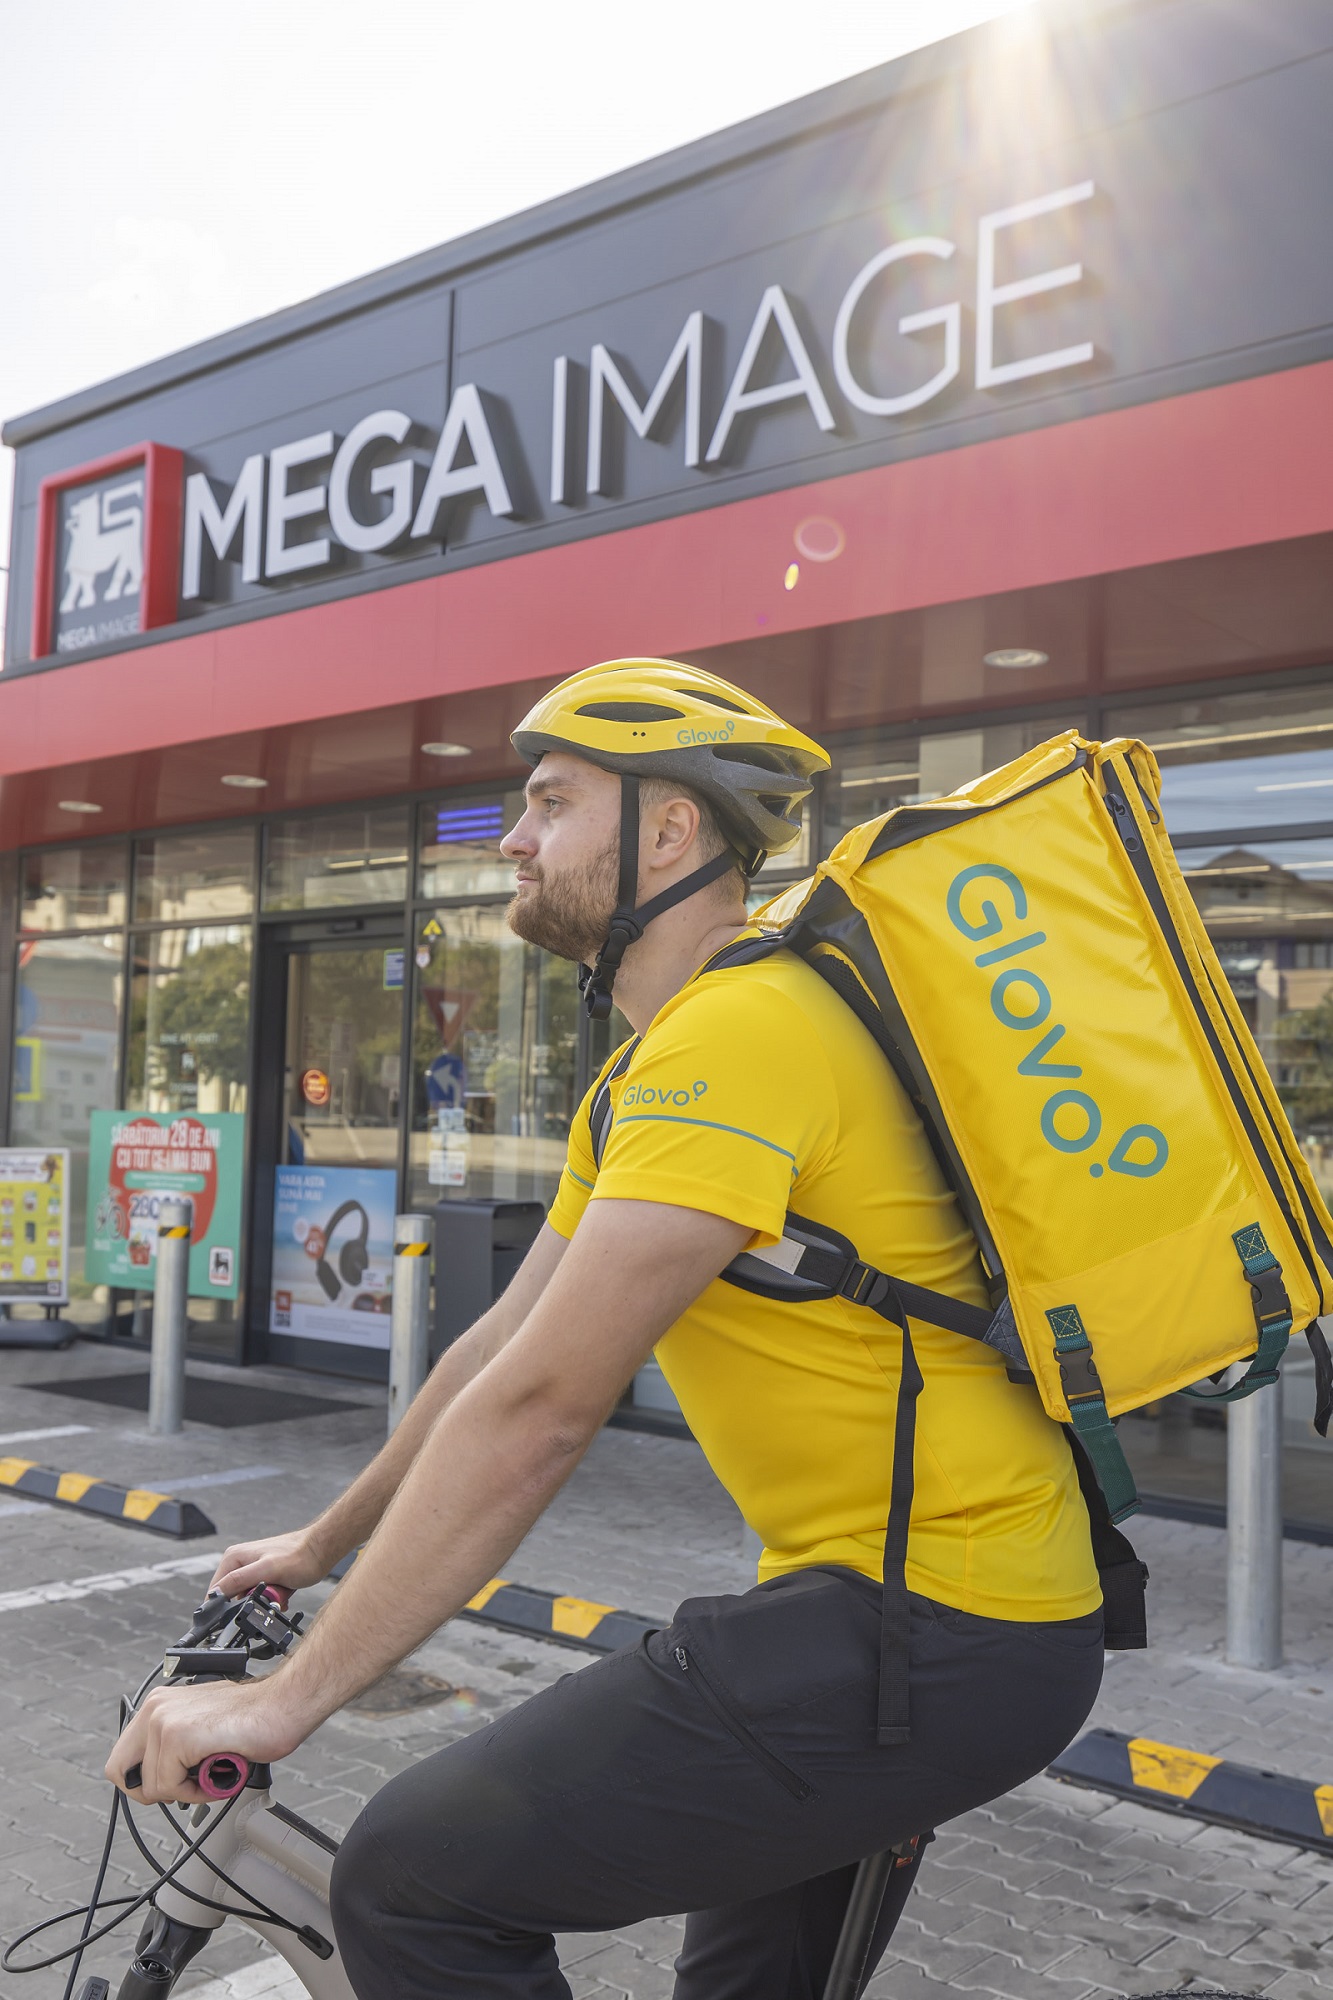 Mega Image extinde serviciul de livrare rapidă a cumpărăturilor direct acasă, prin platforma Glovo